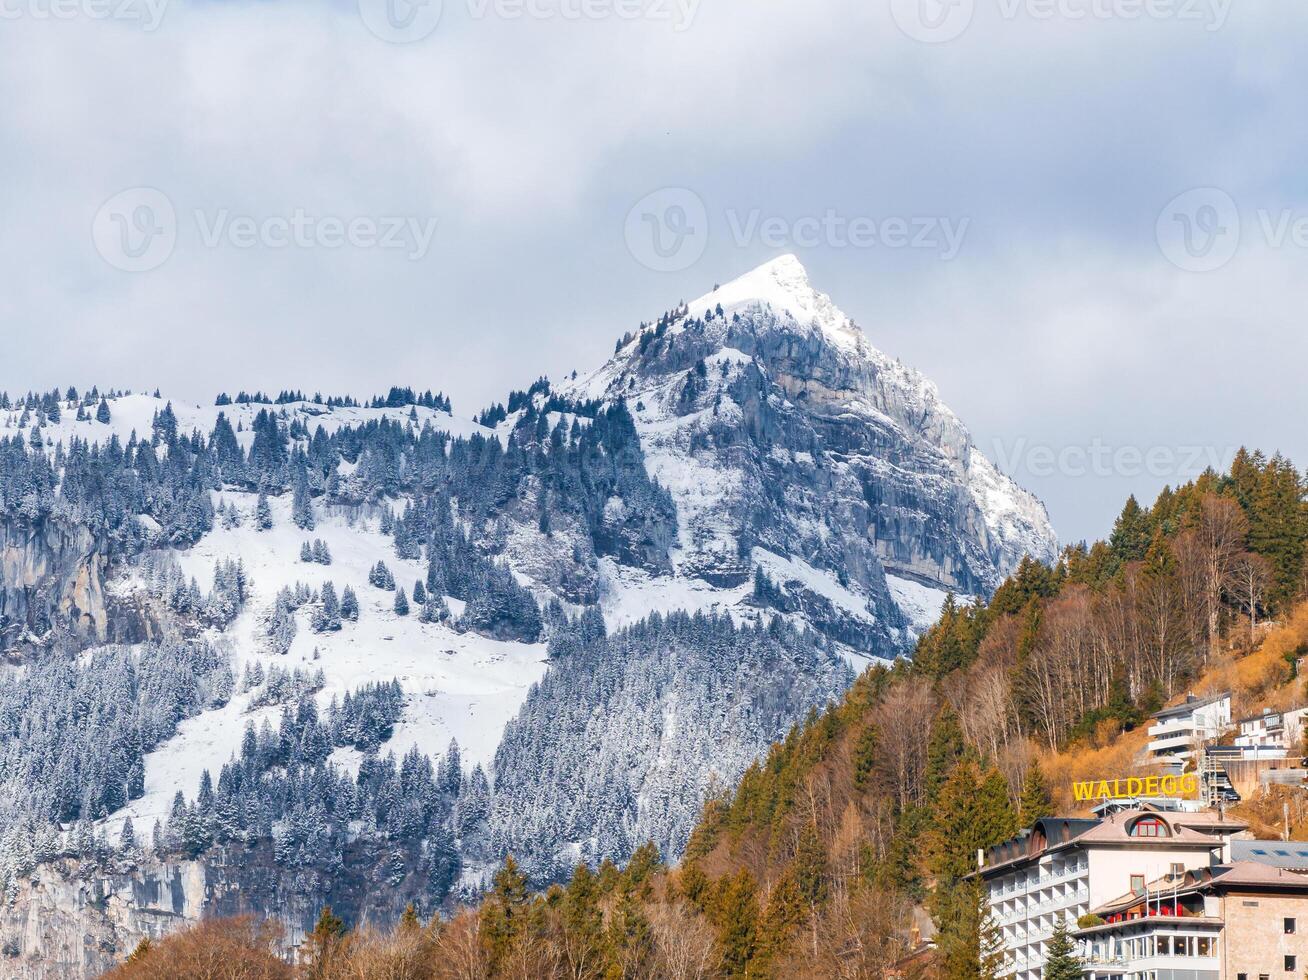 Winter Wonderland in Engelberg with WALDEGG Hotel and Snowy Peaks photo